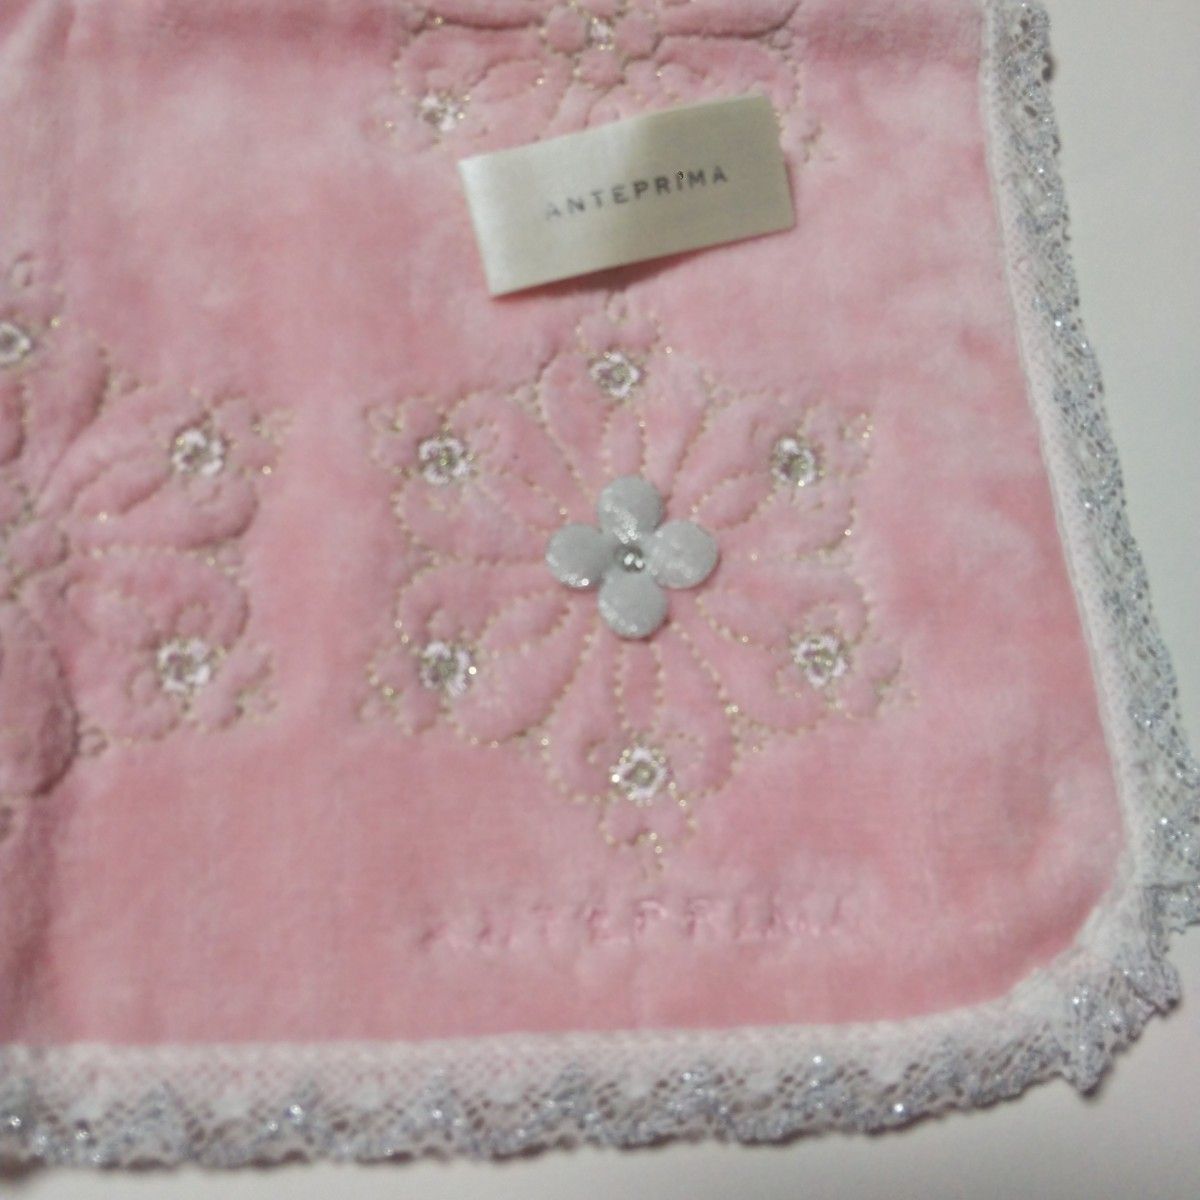 ANTEPRIMA ピンク 29×29 刺繍タオルハンカチ